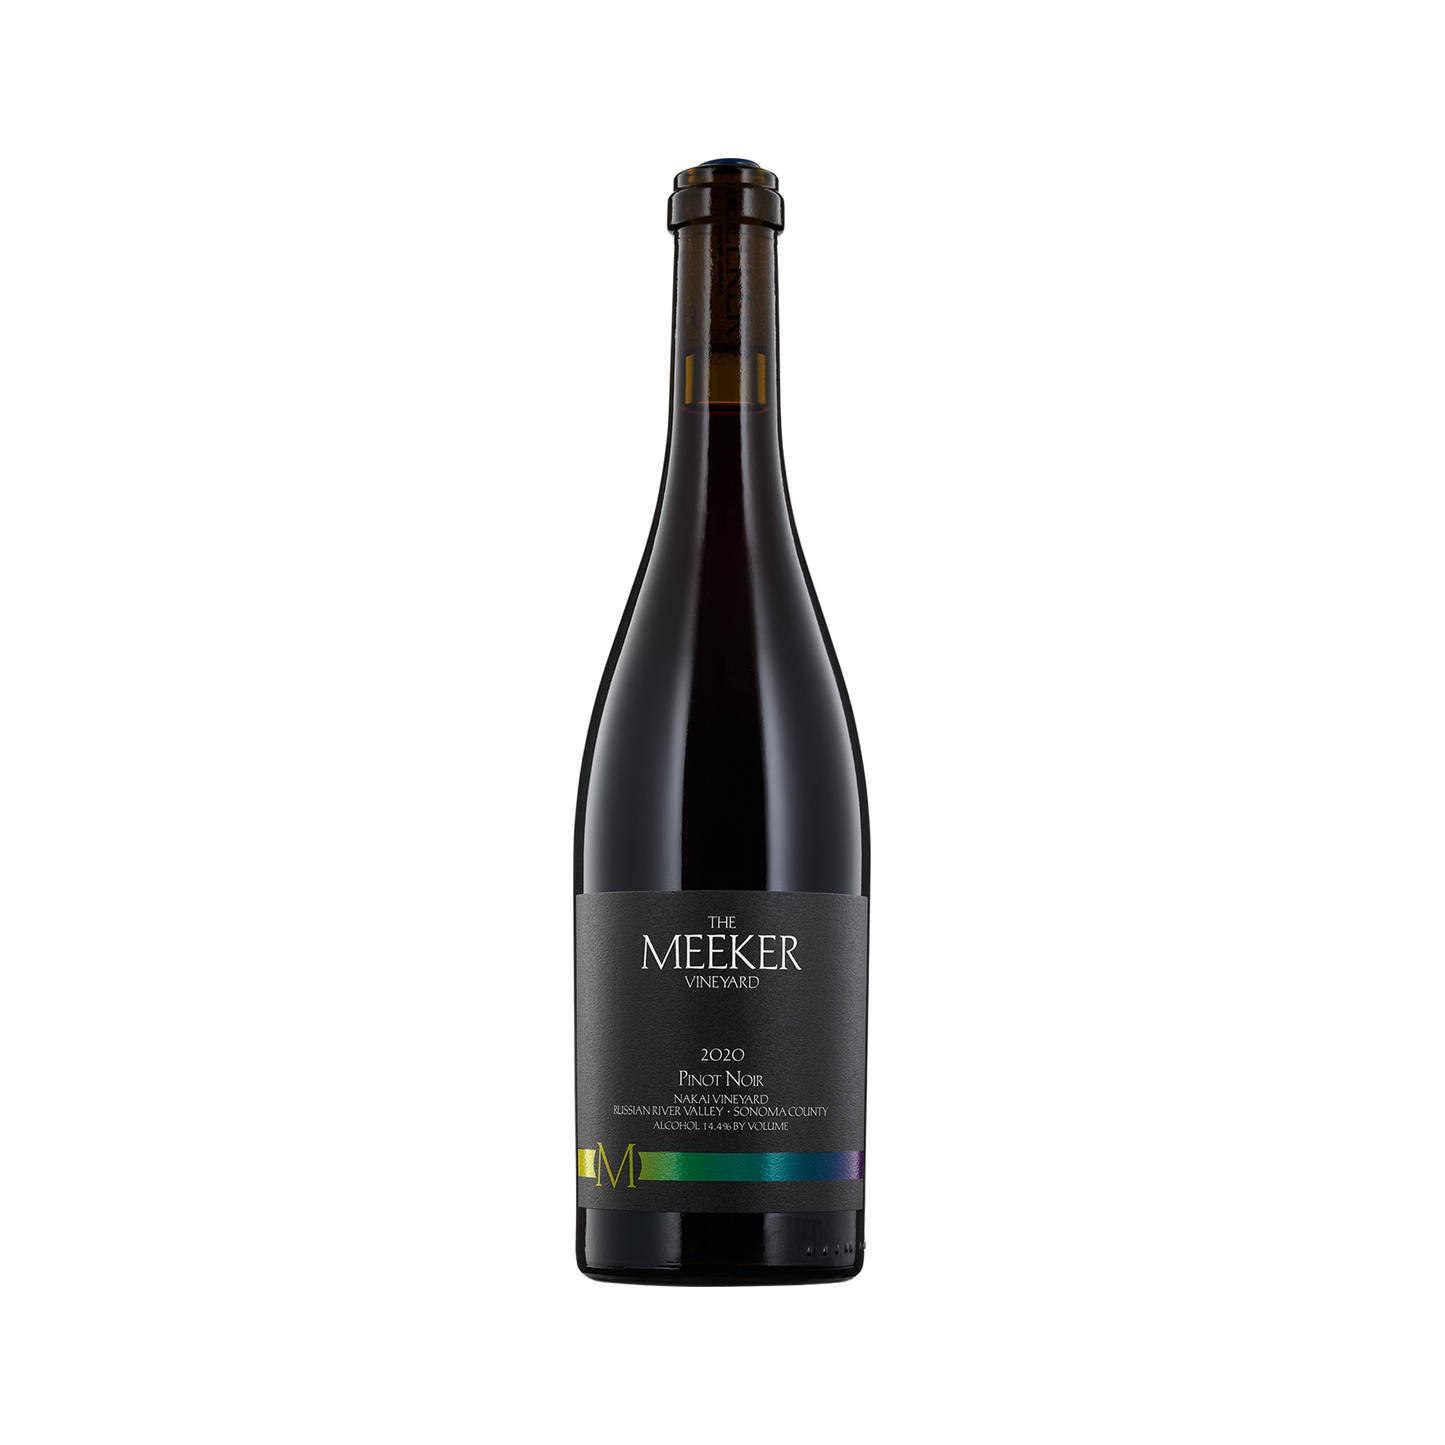 A bottle of Meeker Vineyards 2020 Pinot Noir